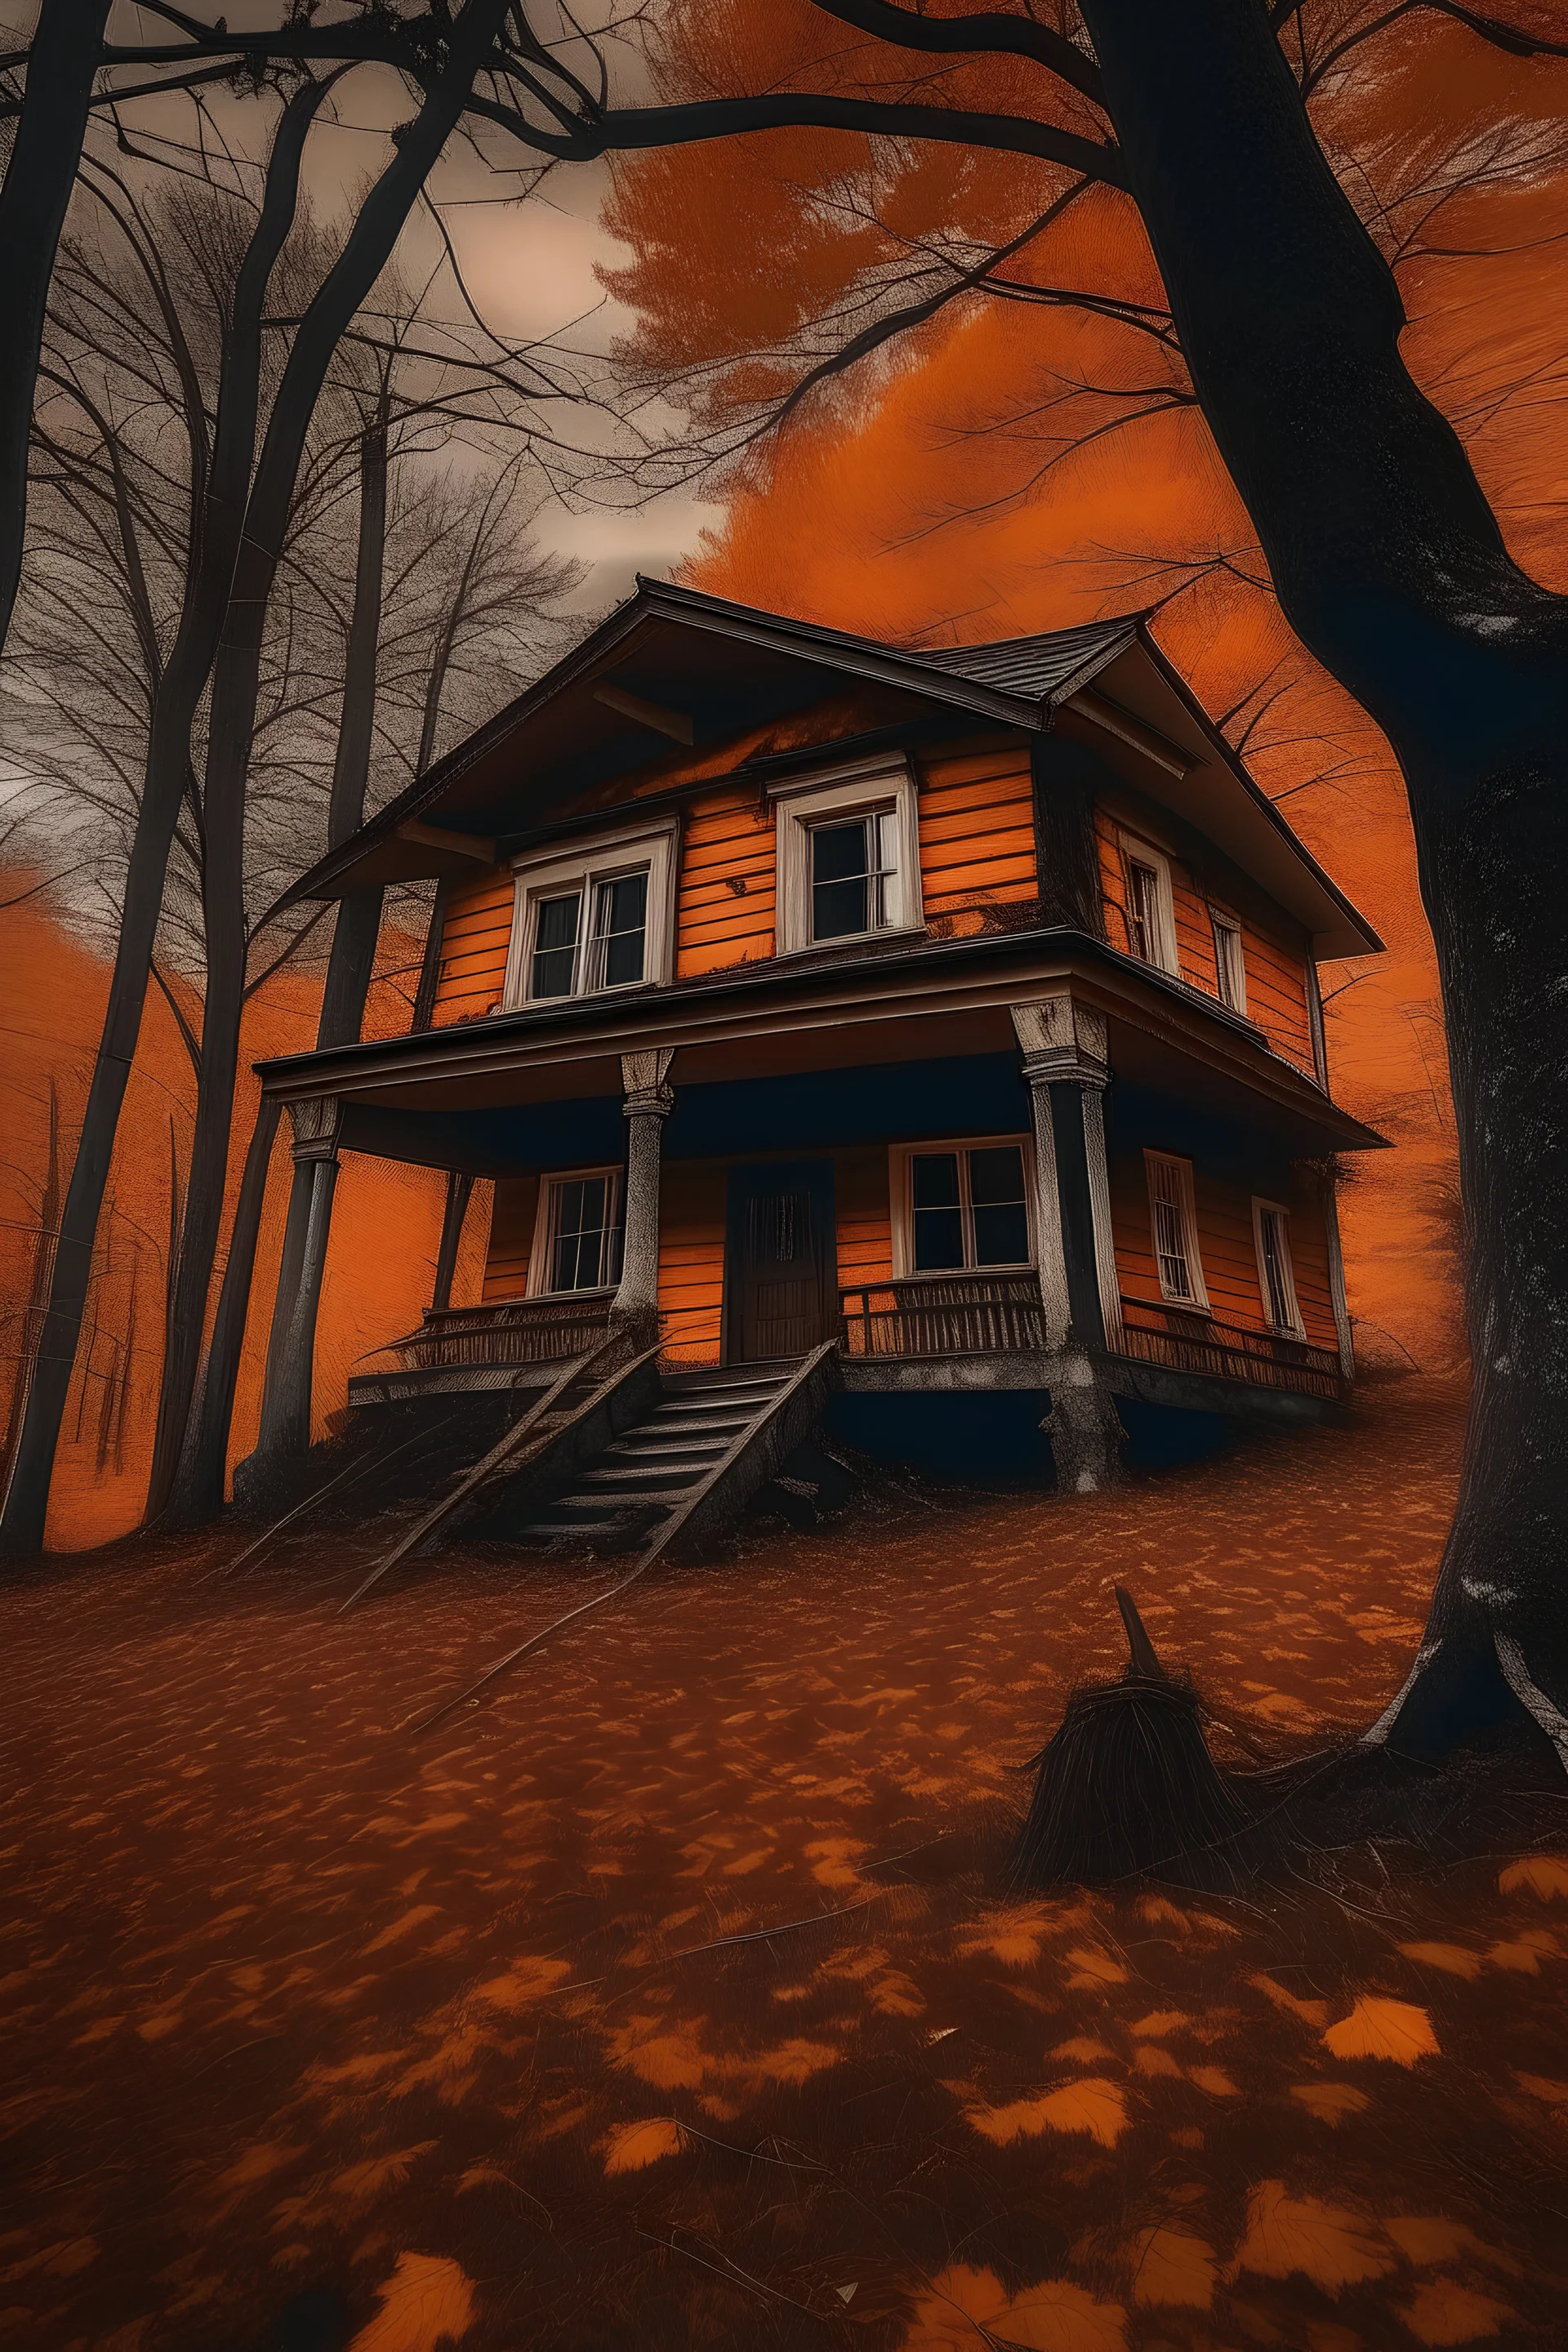 spooky house in oraange forest